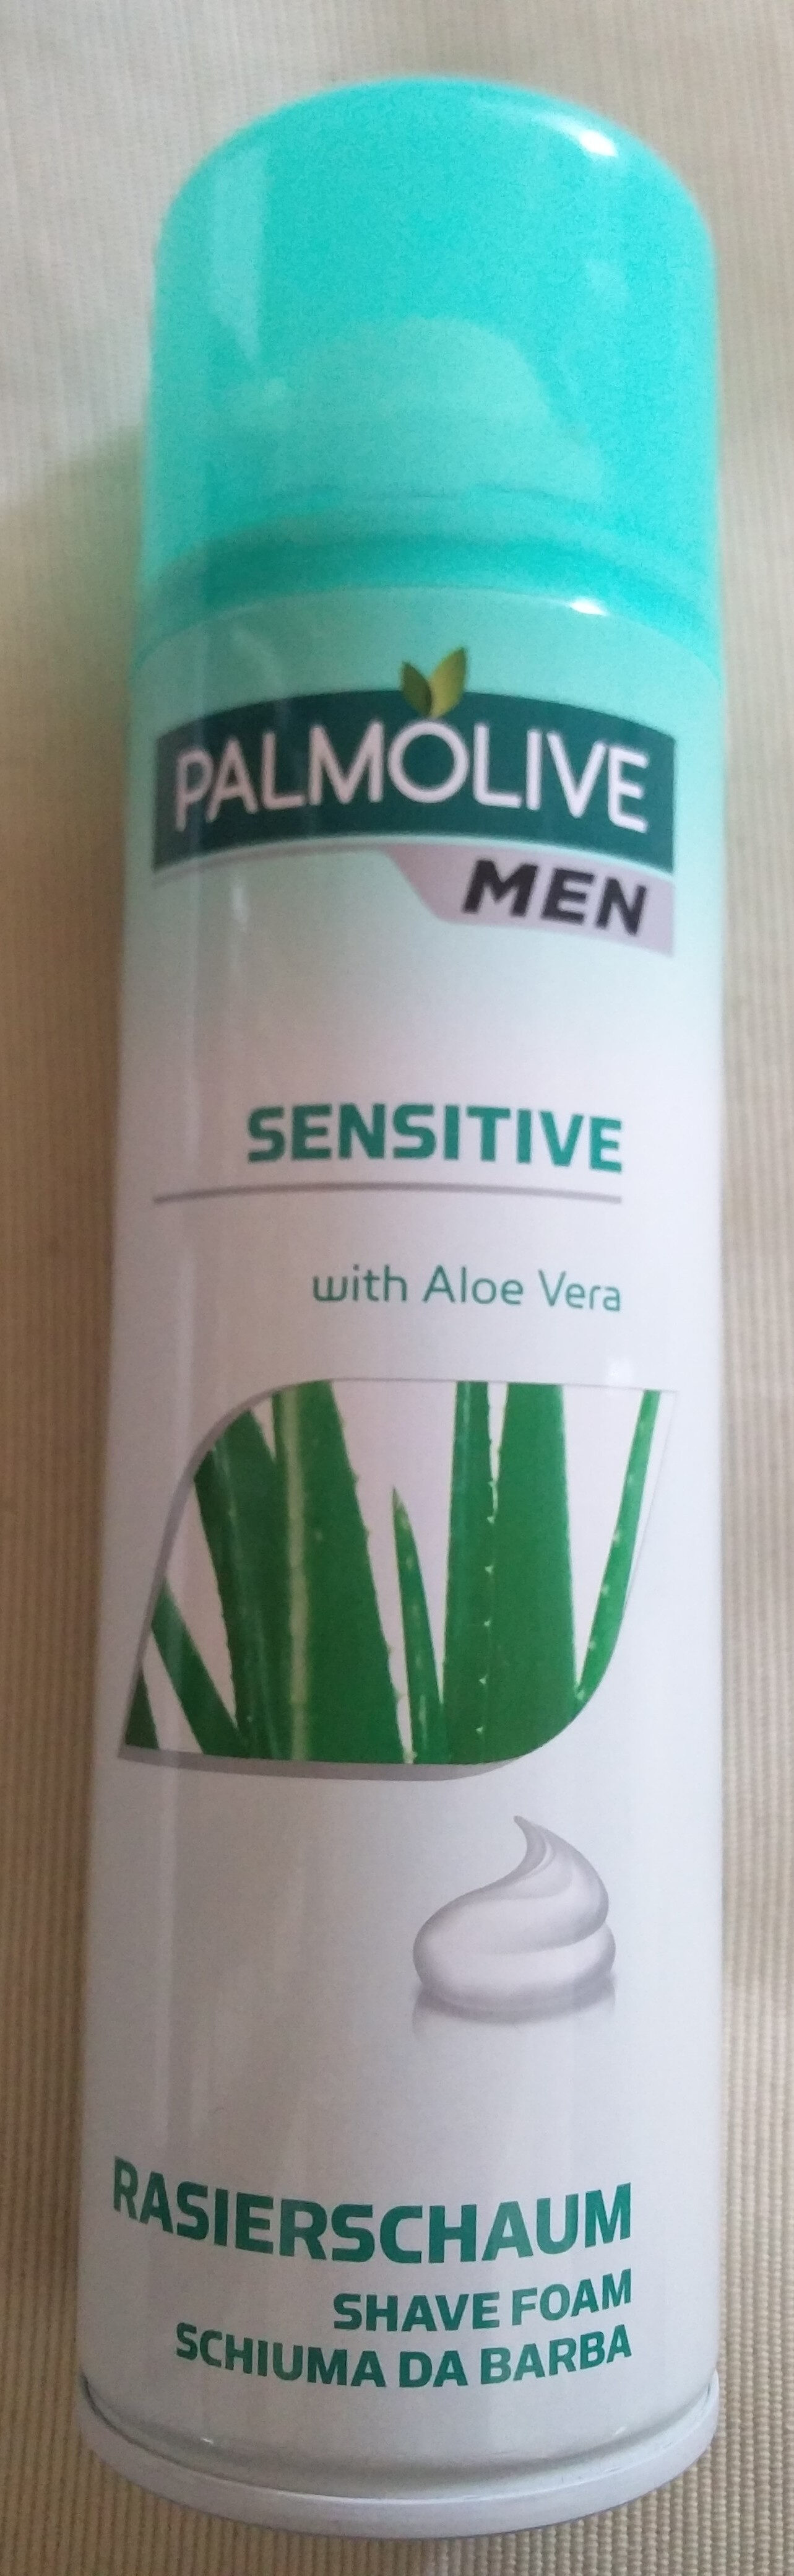 Rasierschaum sensitive (with Aloe Vera) - Produkt - de